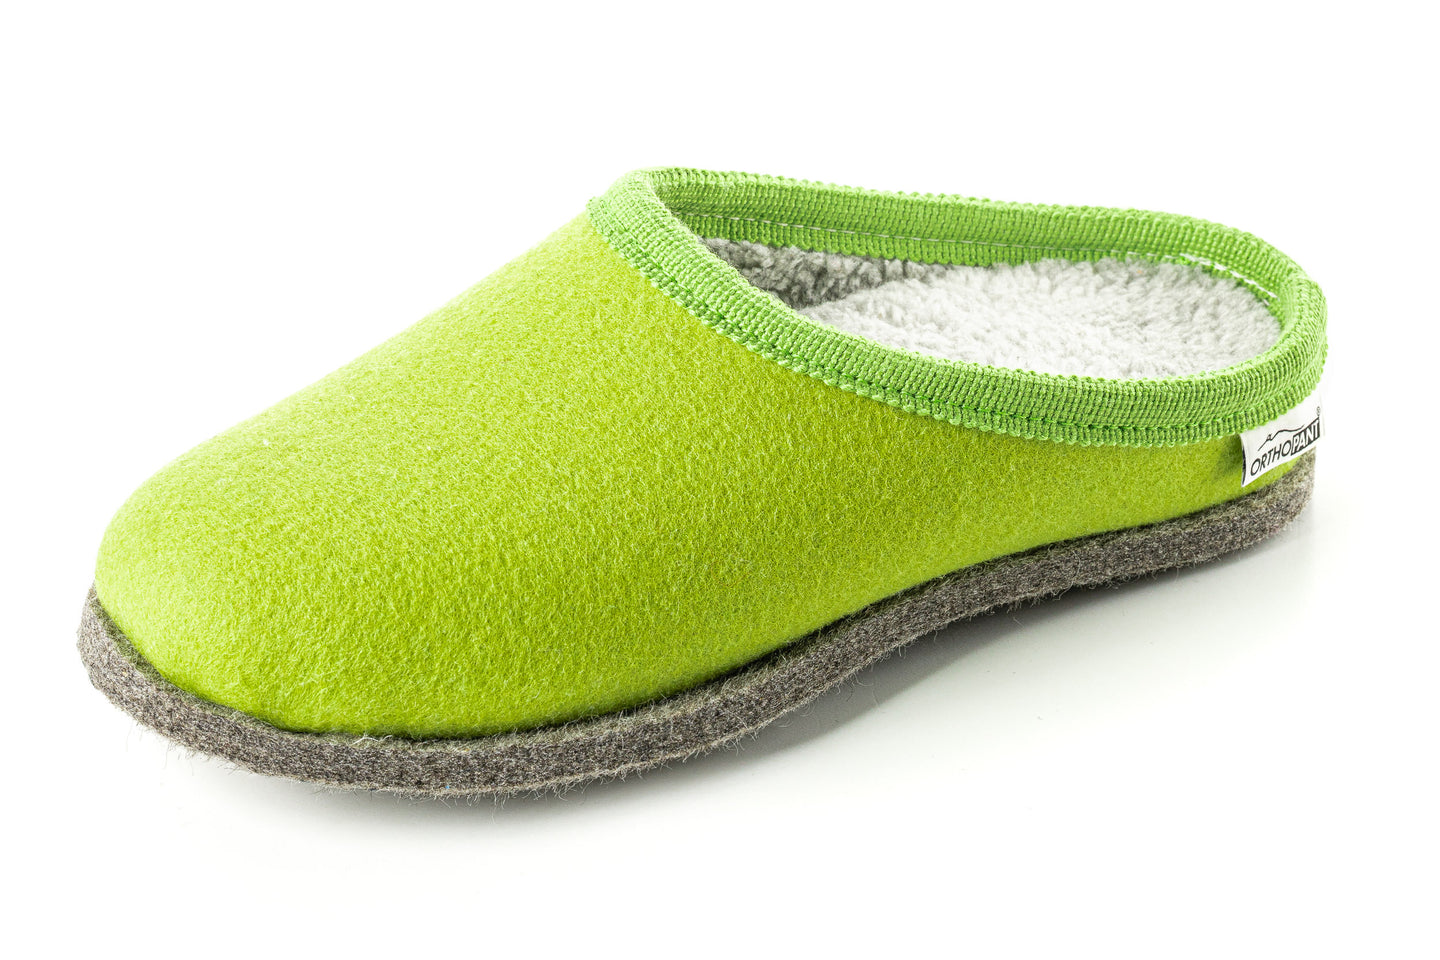 Pantofole in feltro BAITA, verde chiaro con bordo grigio